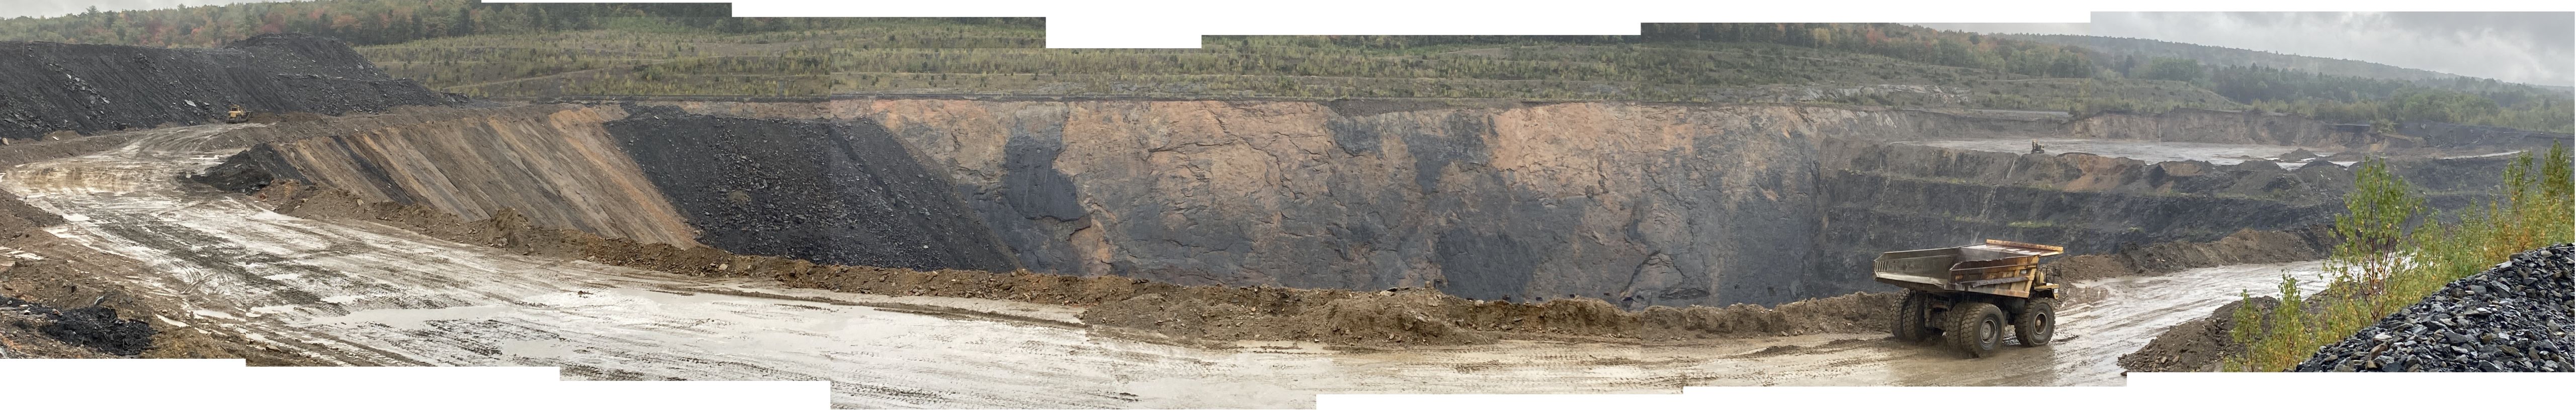 Atlantic Carbon Mine Panoramic Shot